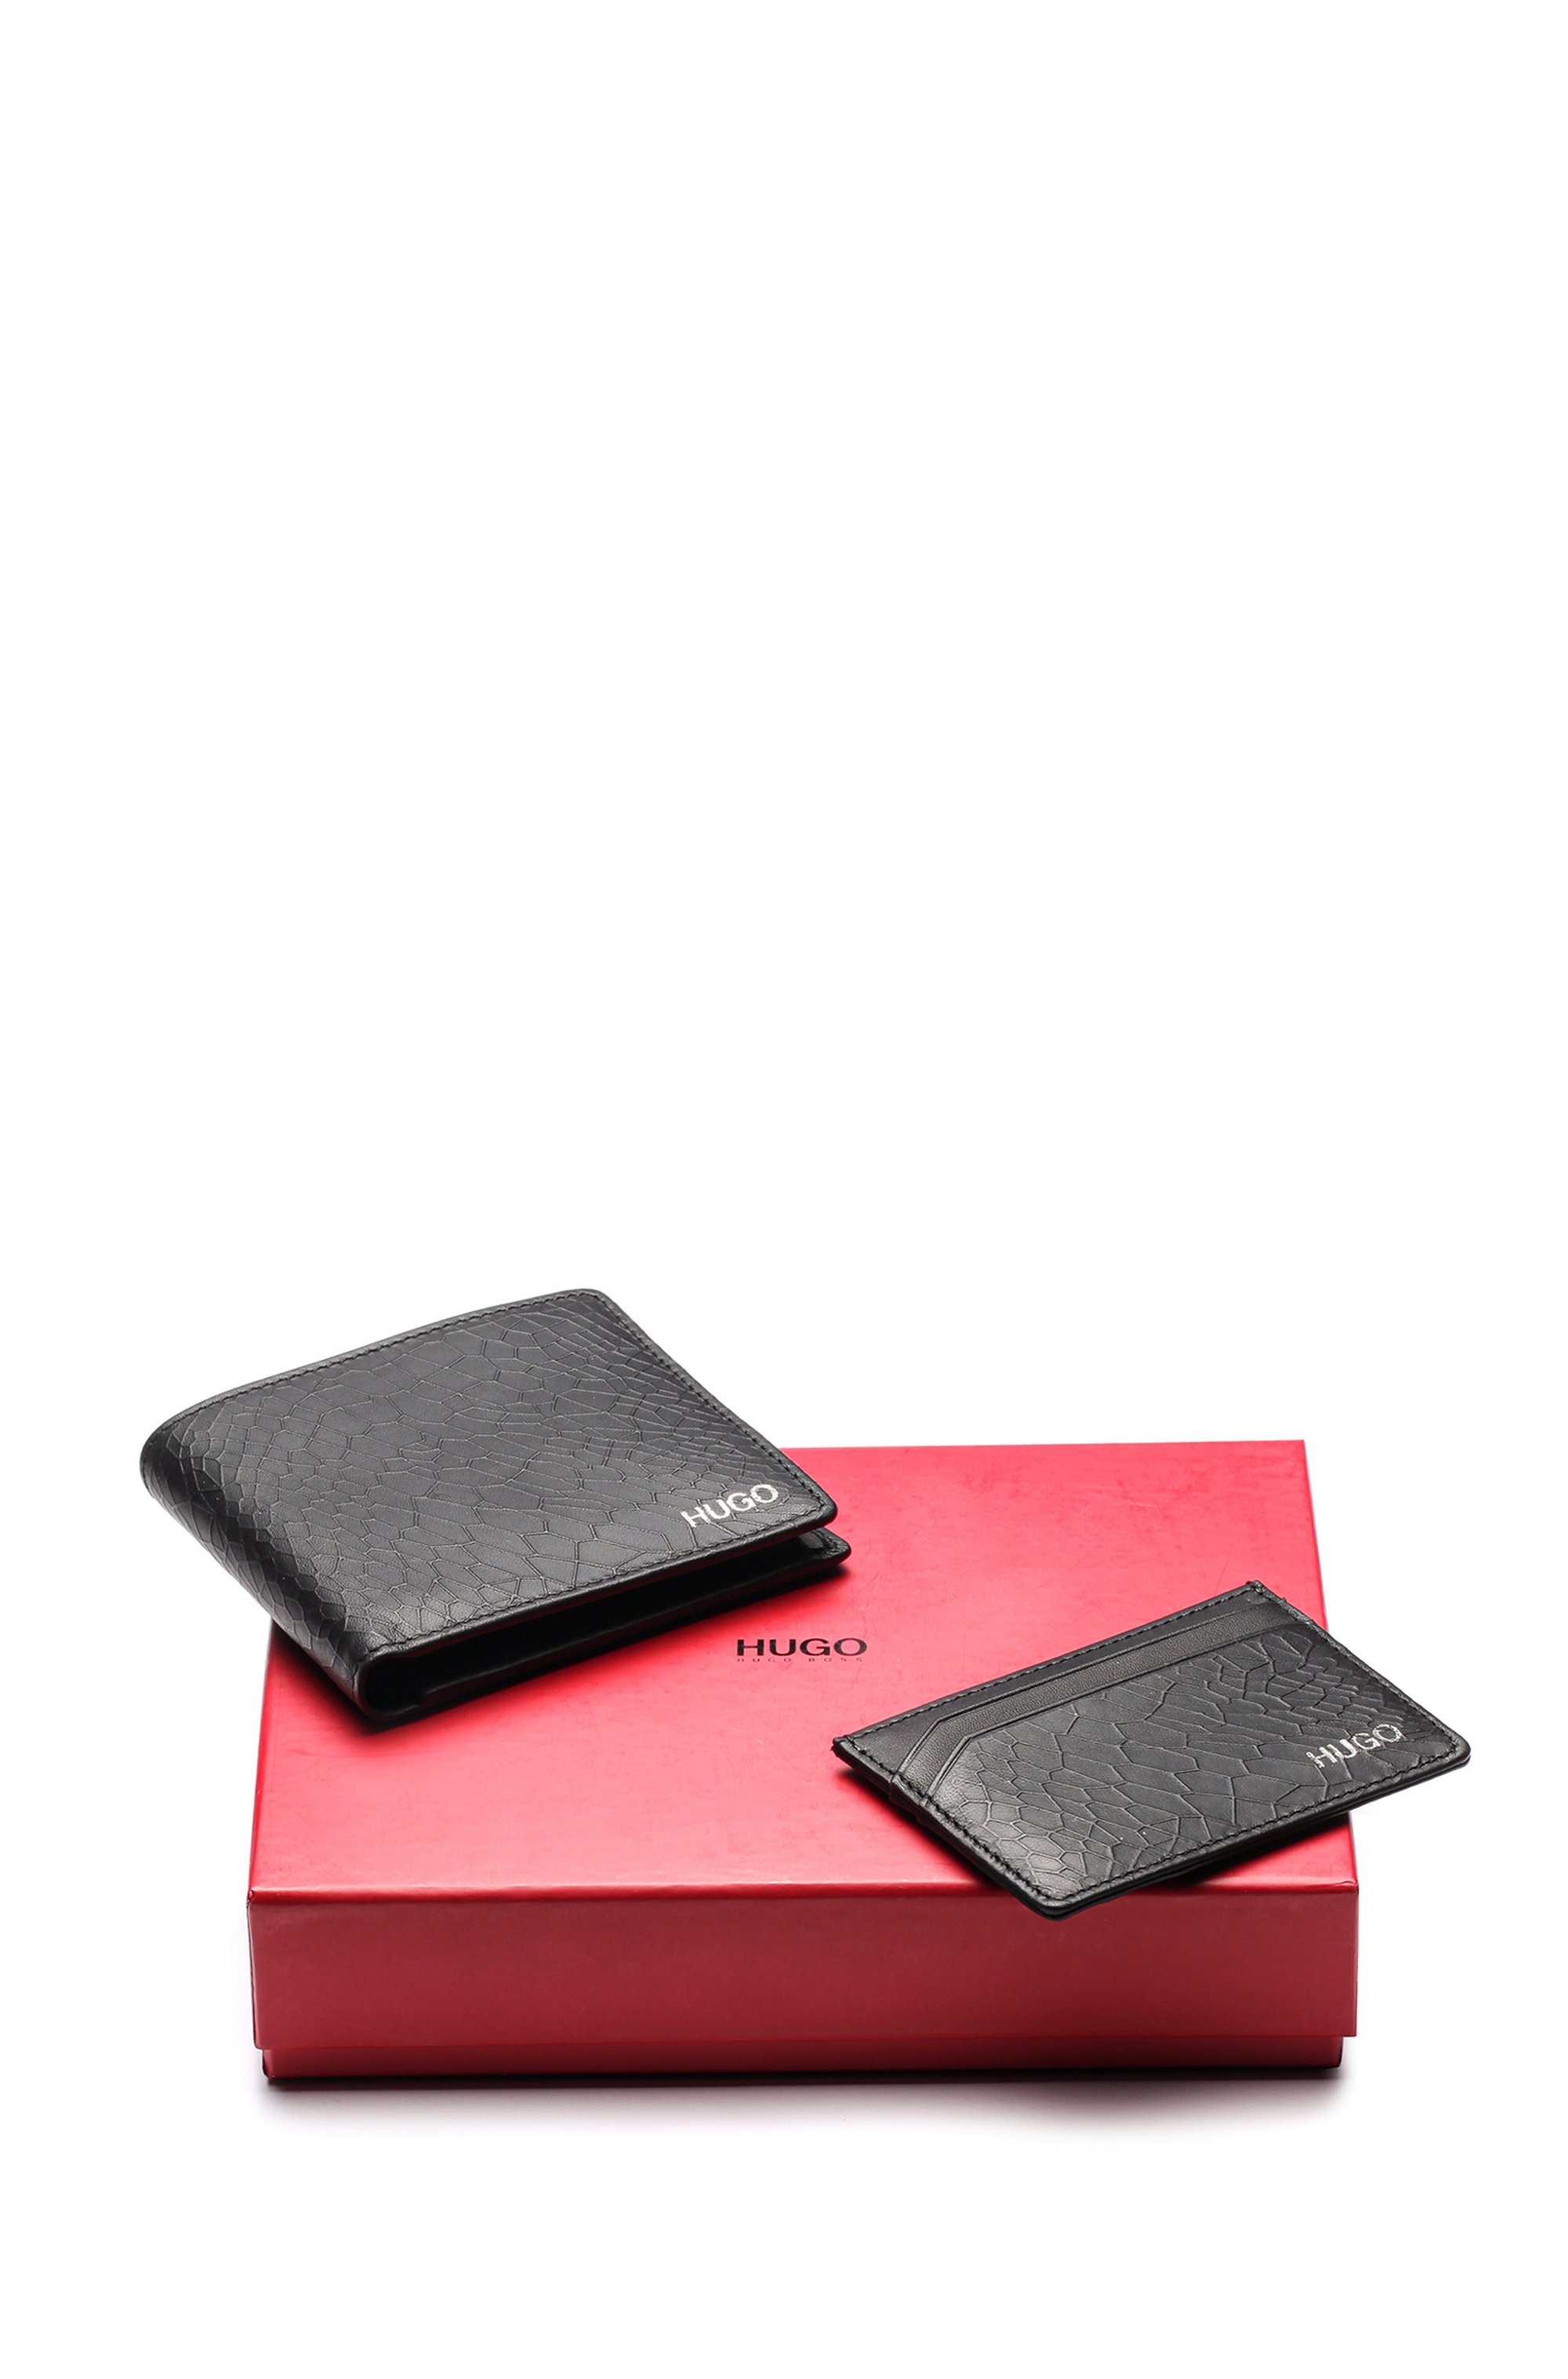 Snakeskin-embossed leather wallet and card holder gift set, Black